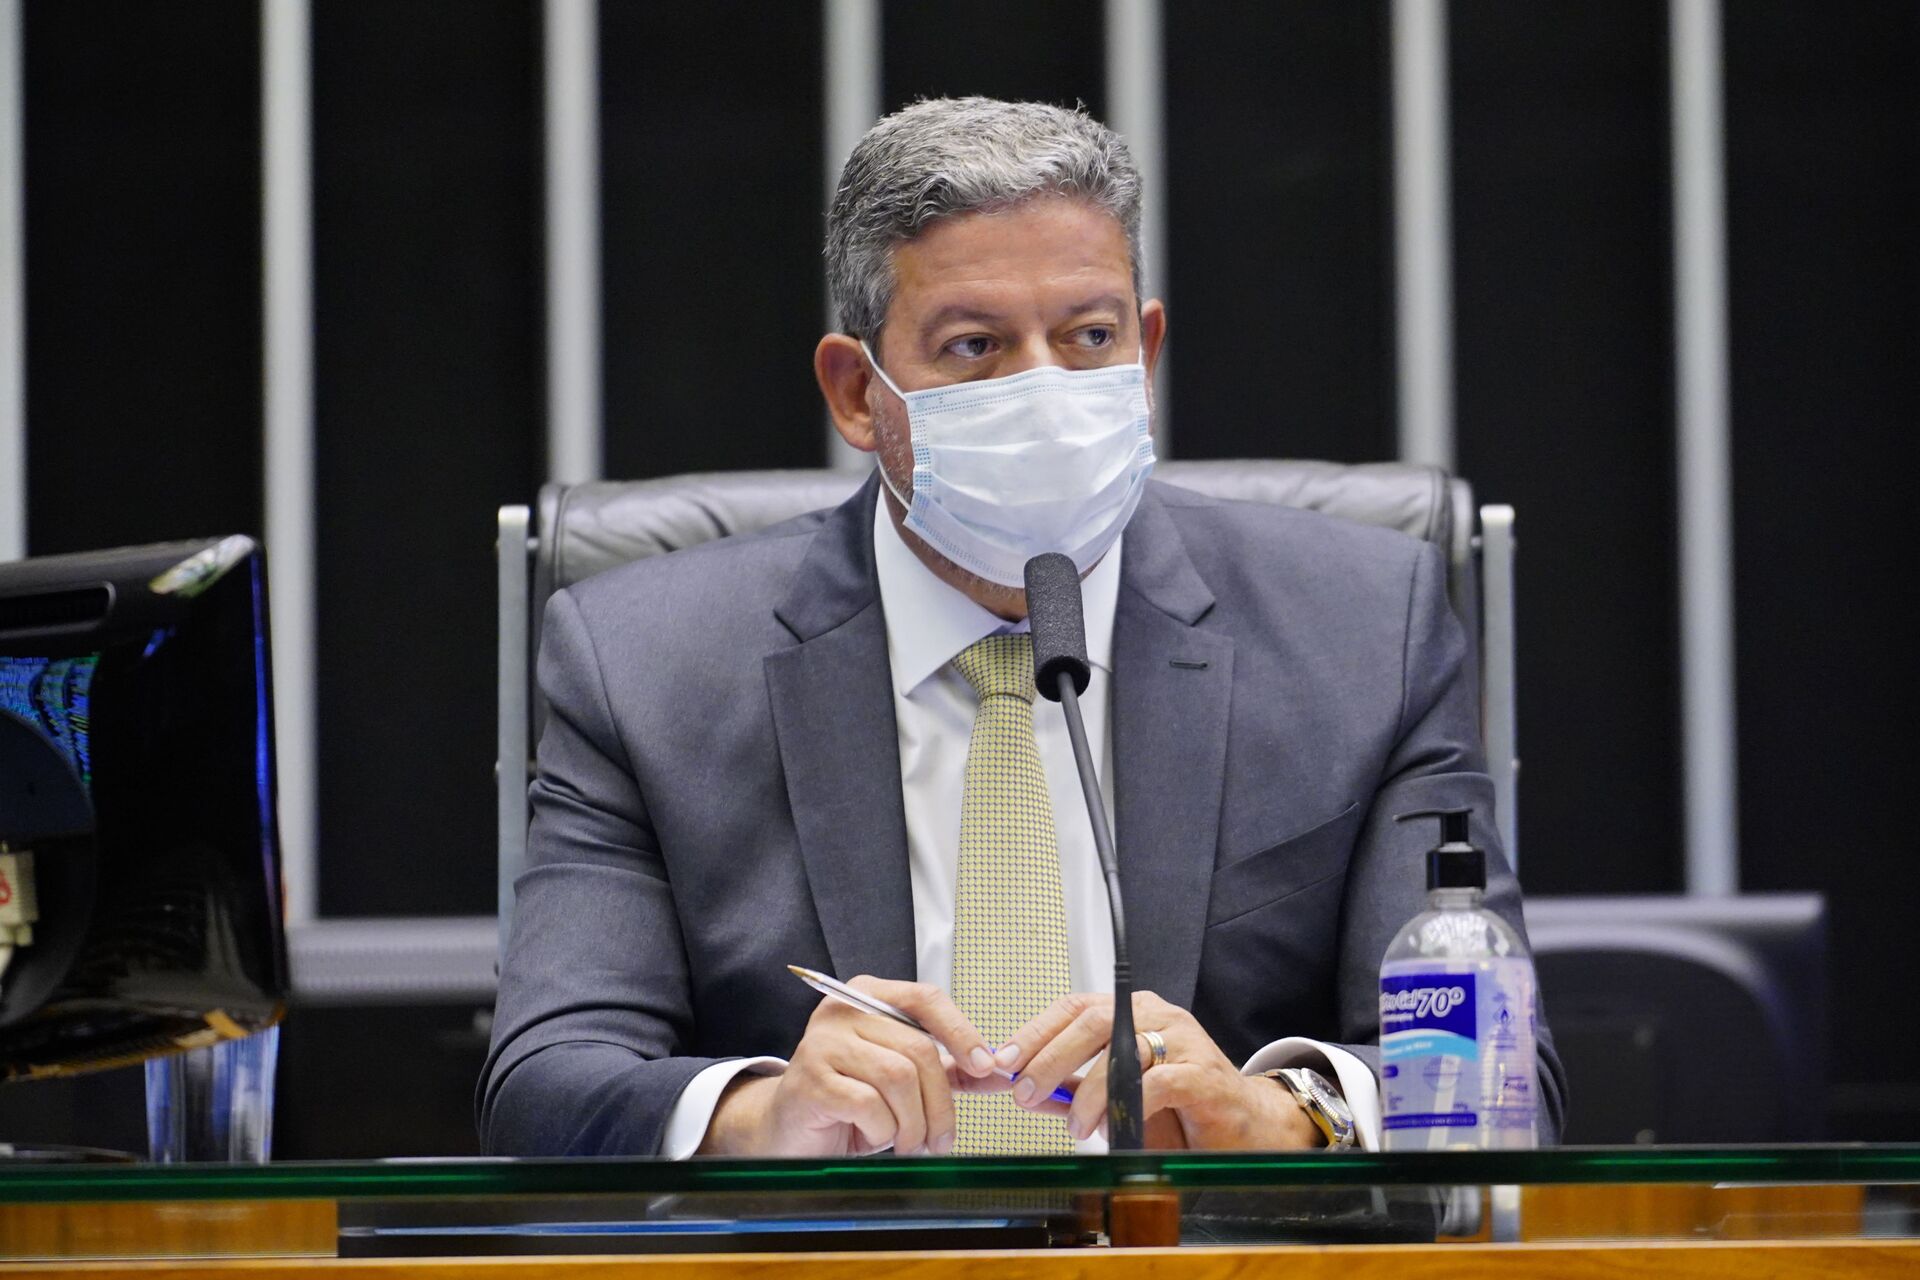 Presidente da Câmara afirma que vai levar proposta do voto impresso para plenário - Sputnik Brasil, 1920, 06.08.2021